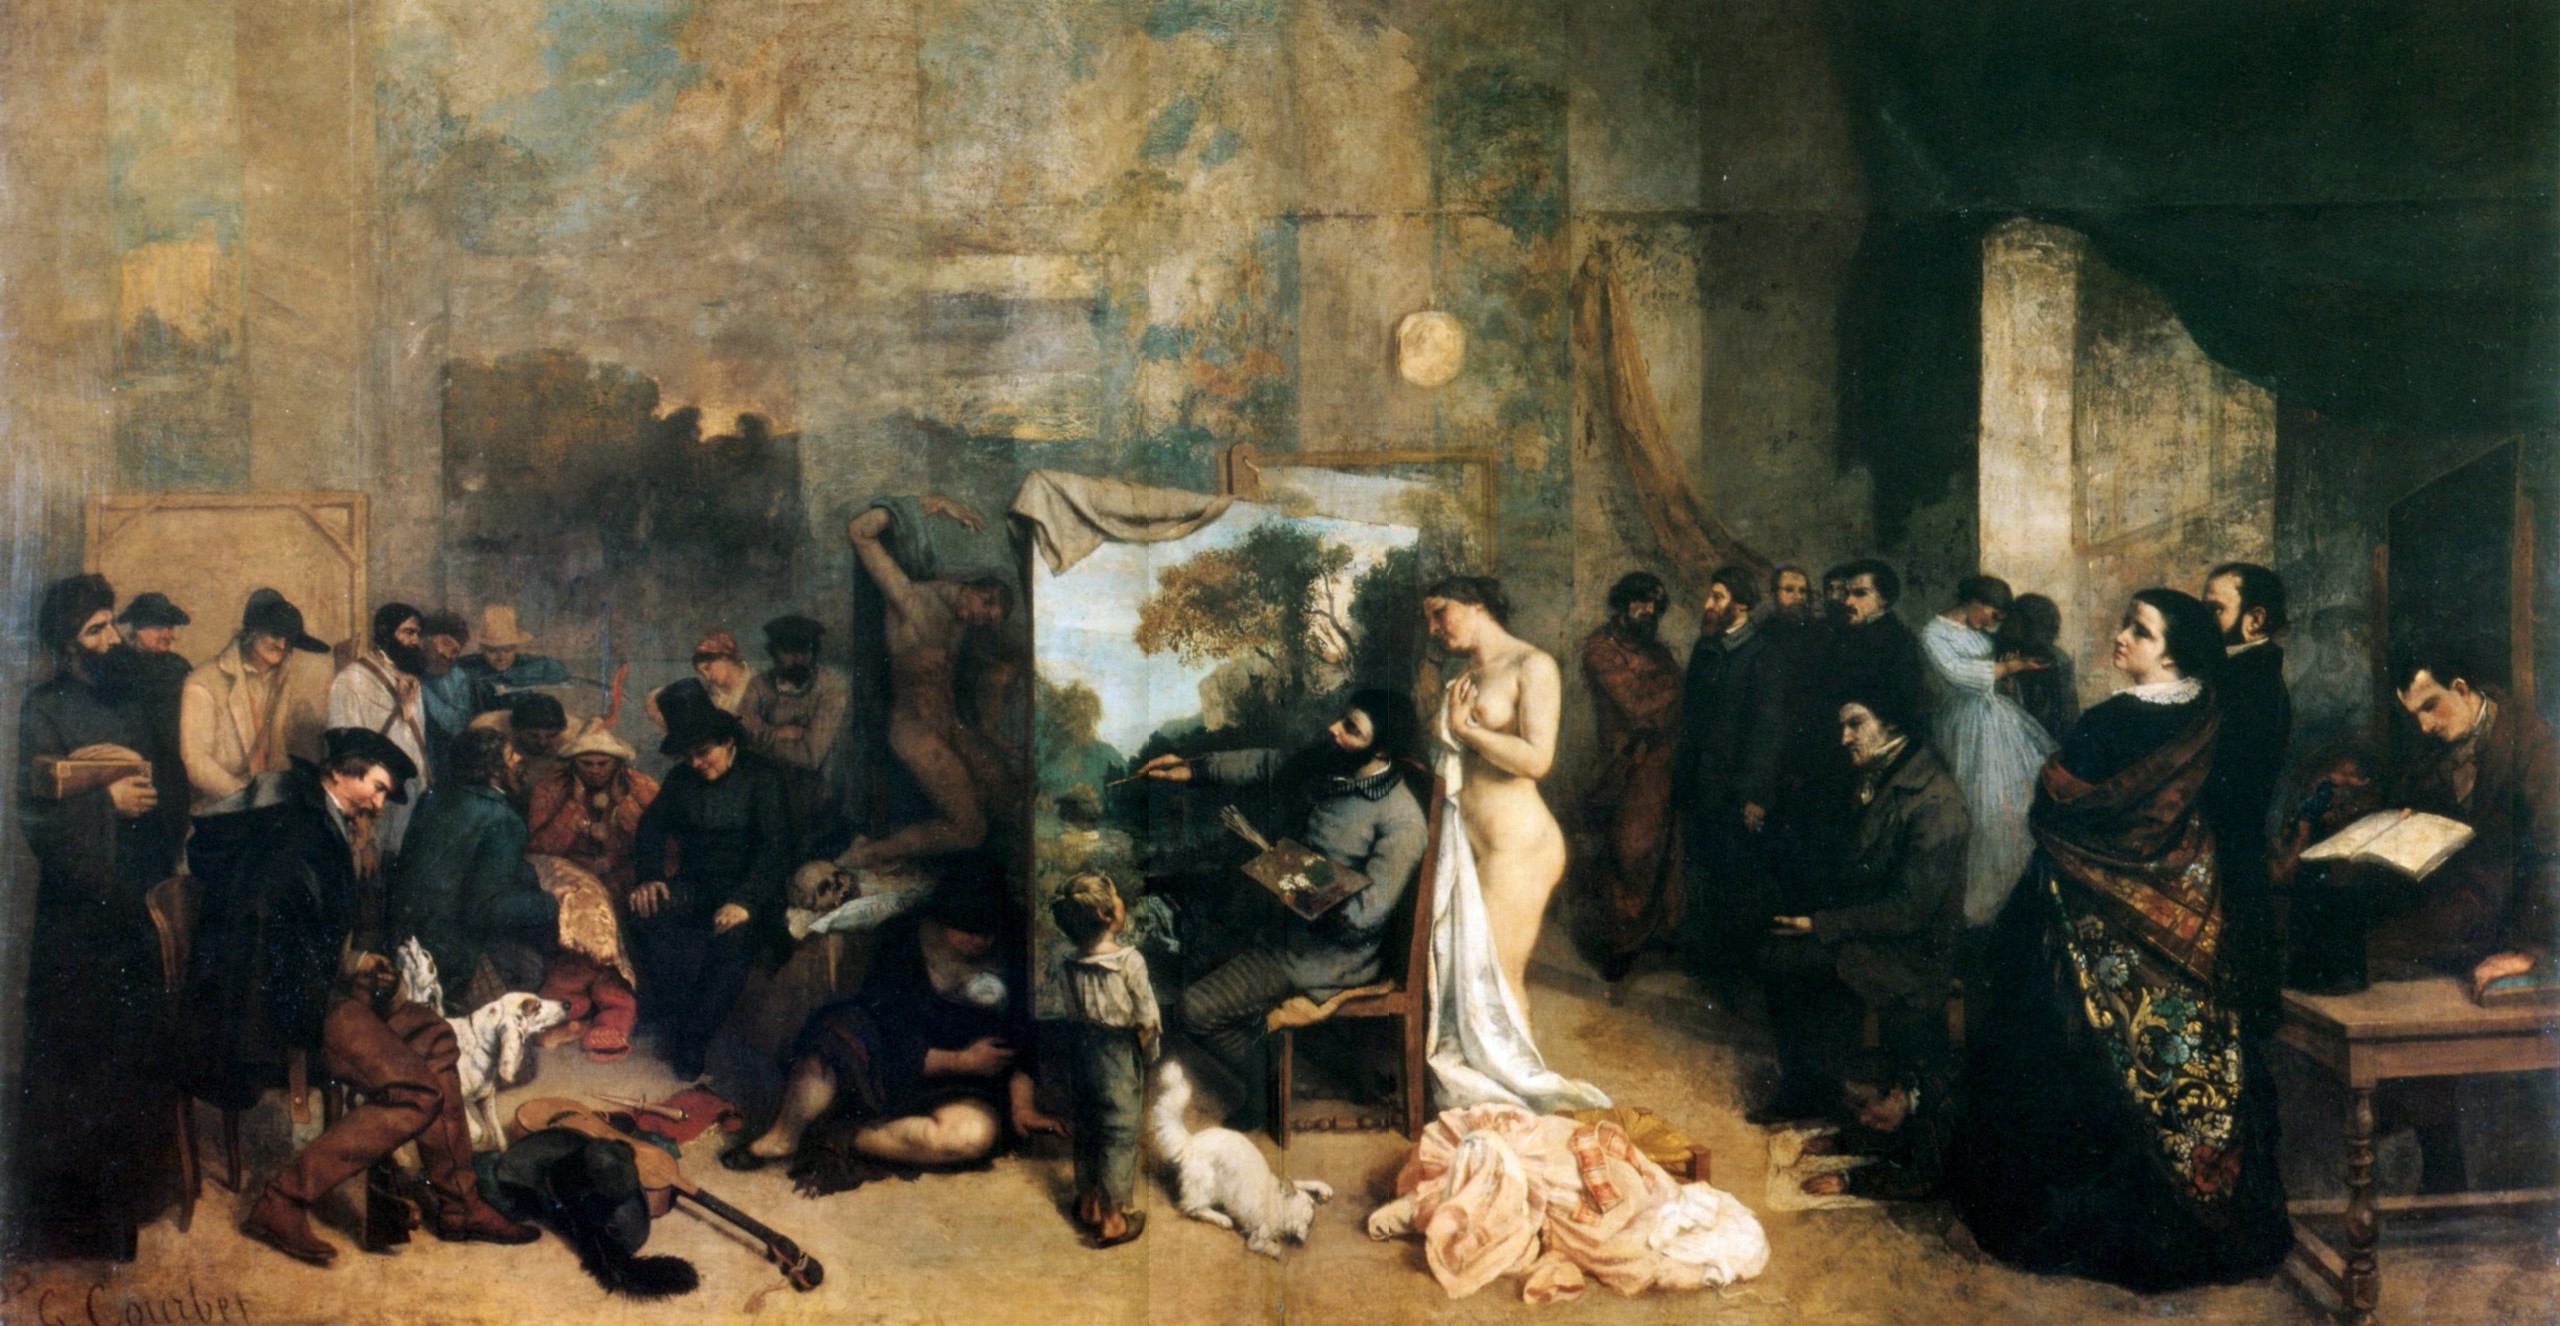 Gustave Courbet, L'Atelier du peintre, 1855